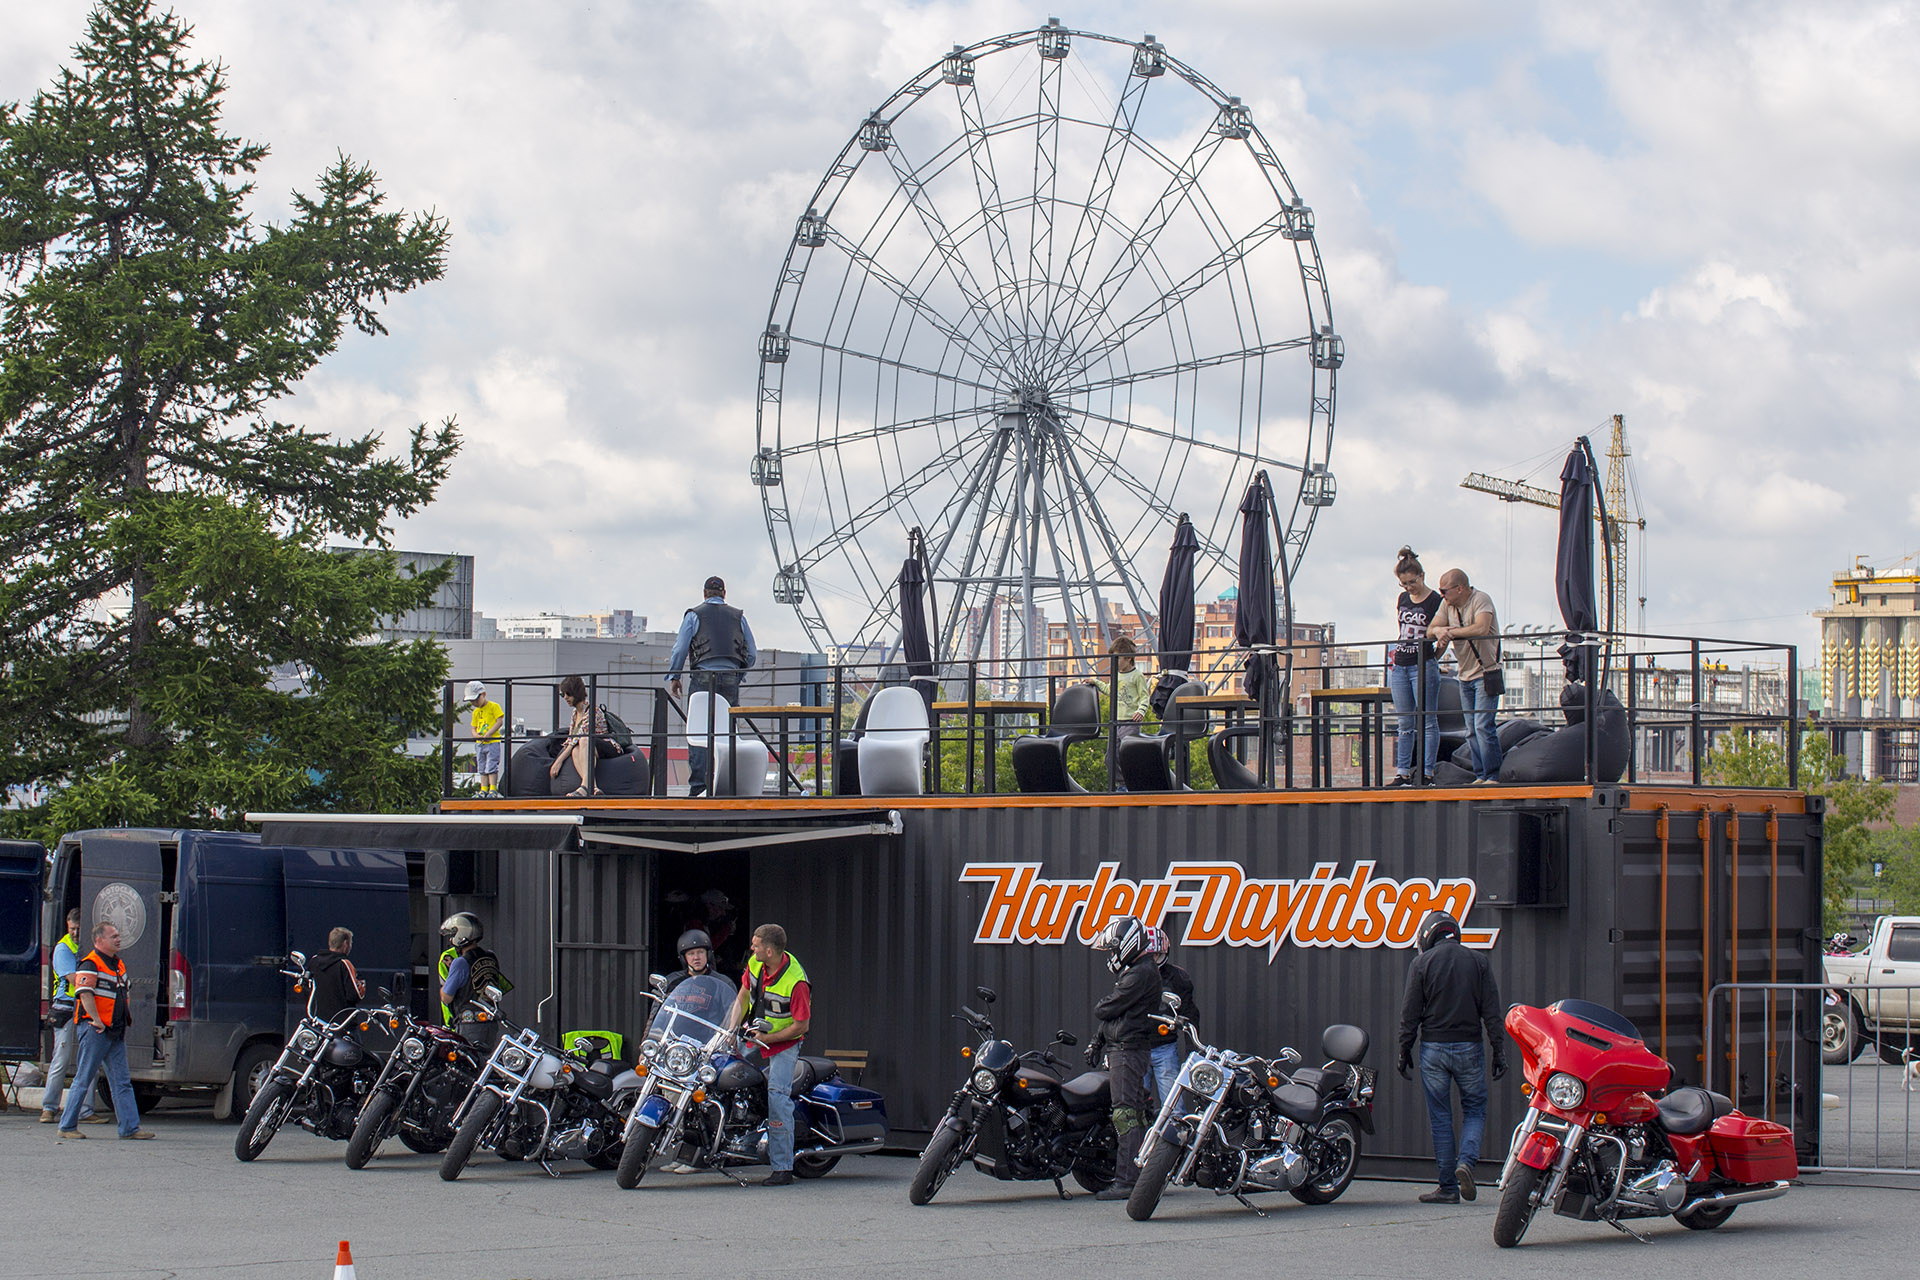 Контейнер Harley-Davidson курсирует по России и СНГ два года